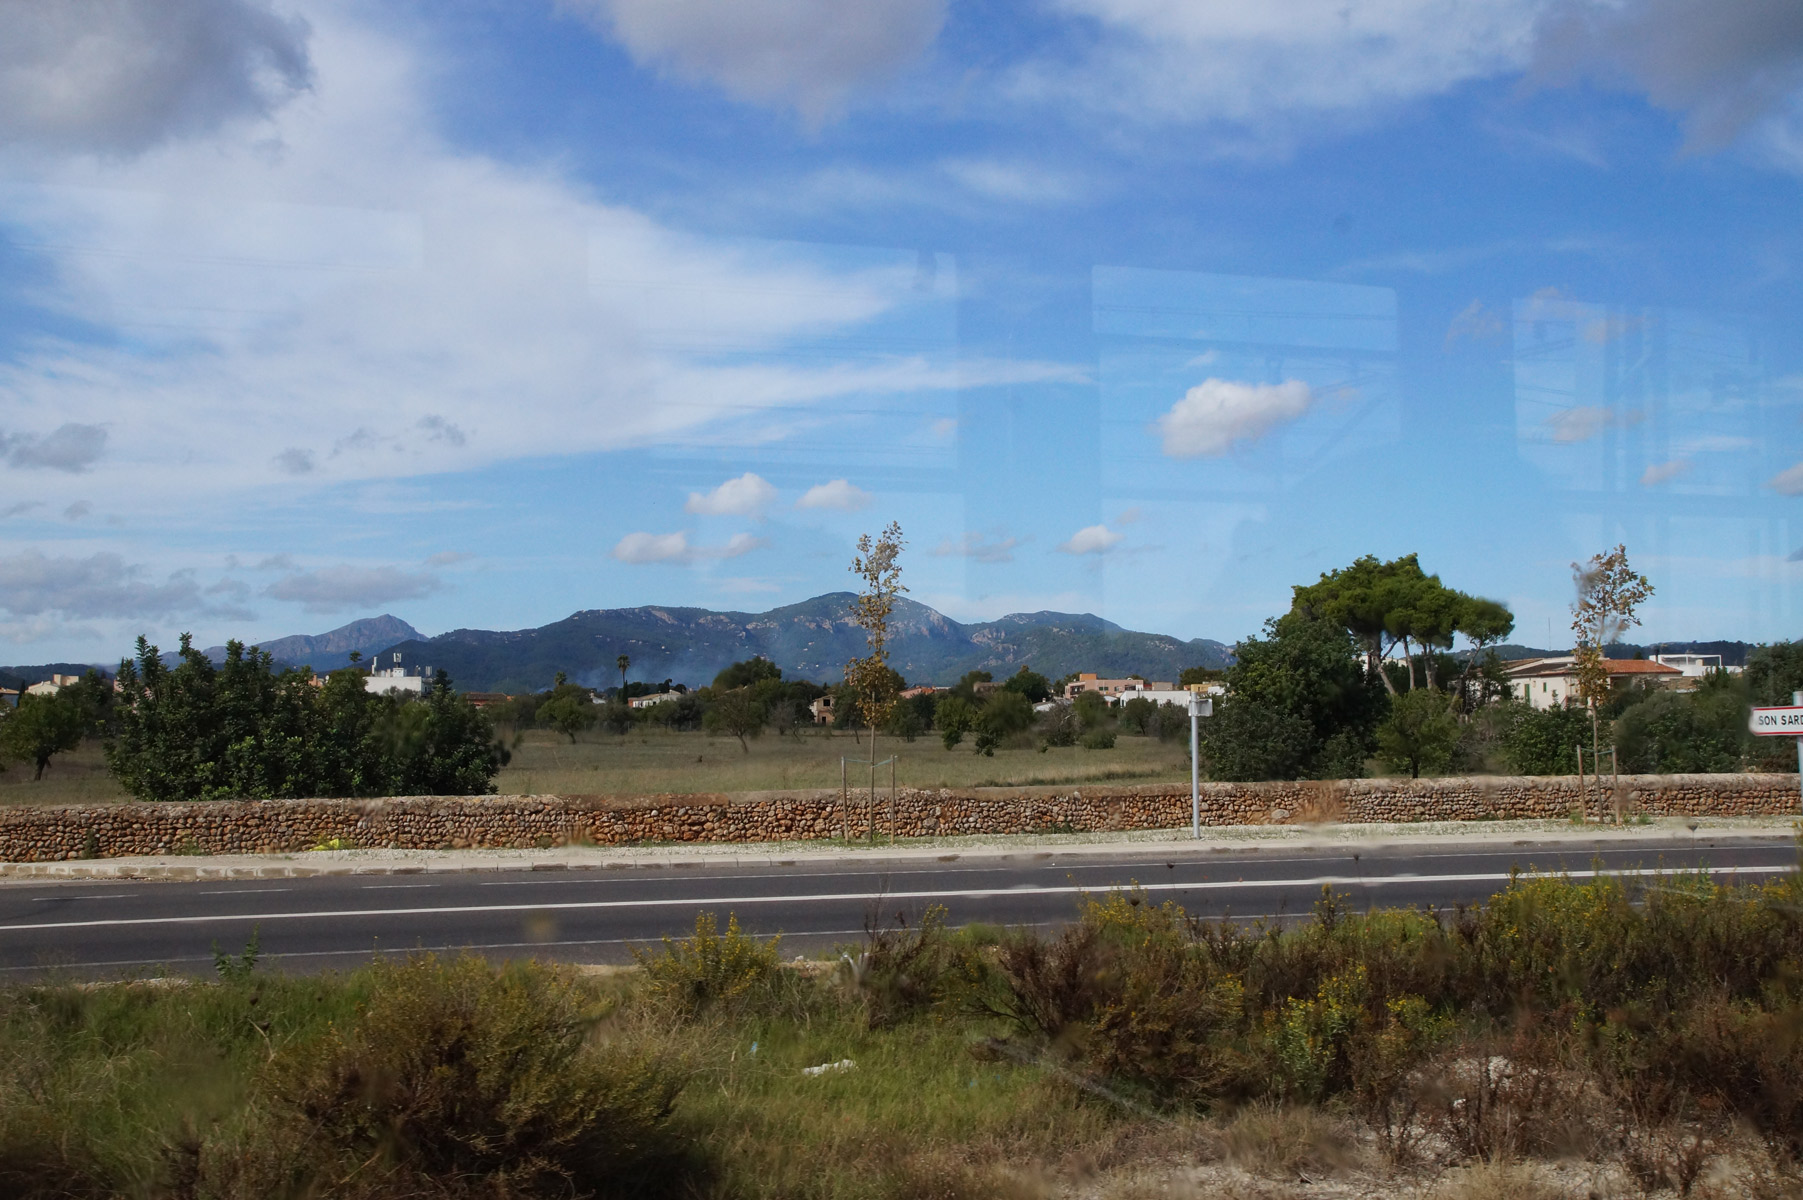 Мчимся вдоль шоссе. На горизонте уже показались горы Трамунтана.

Испания, Майорка, осень 2019